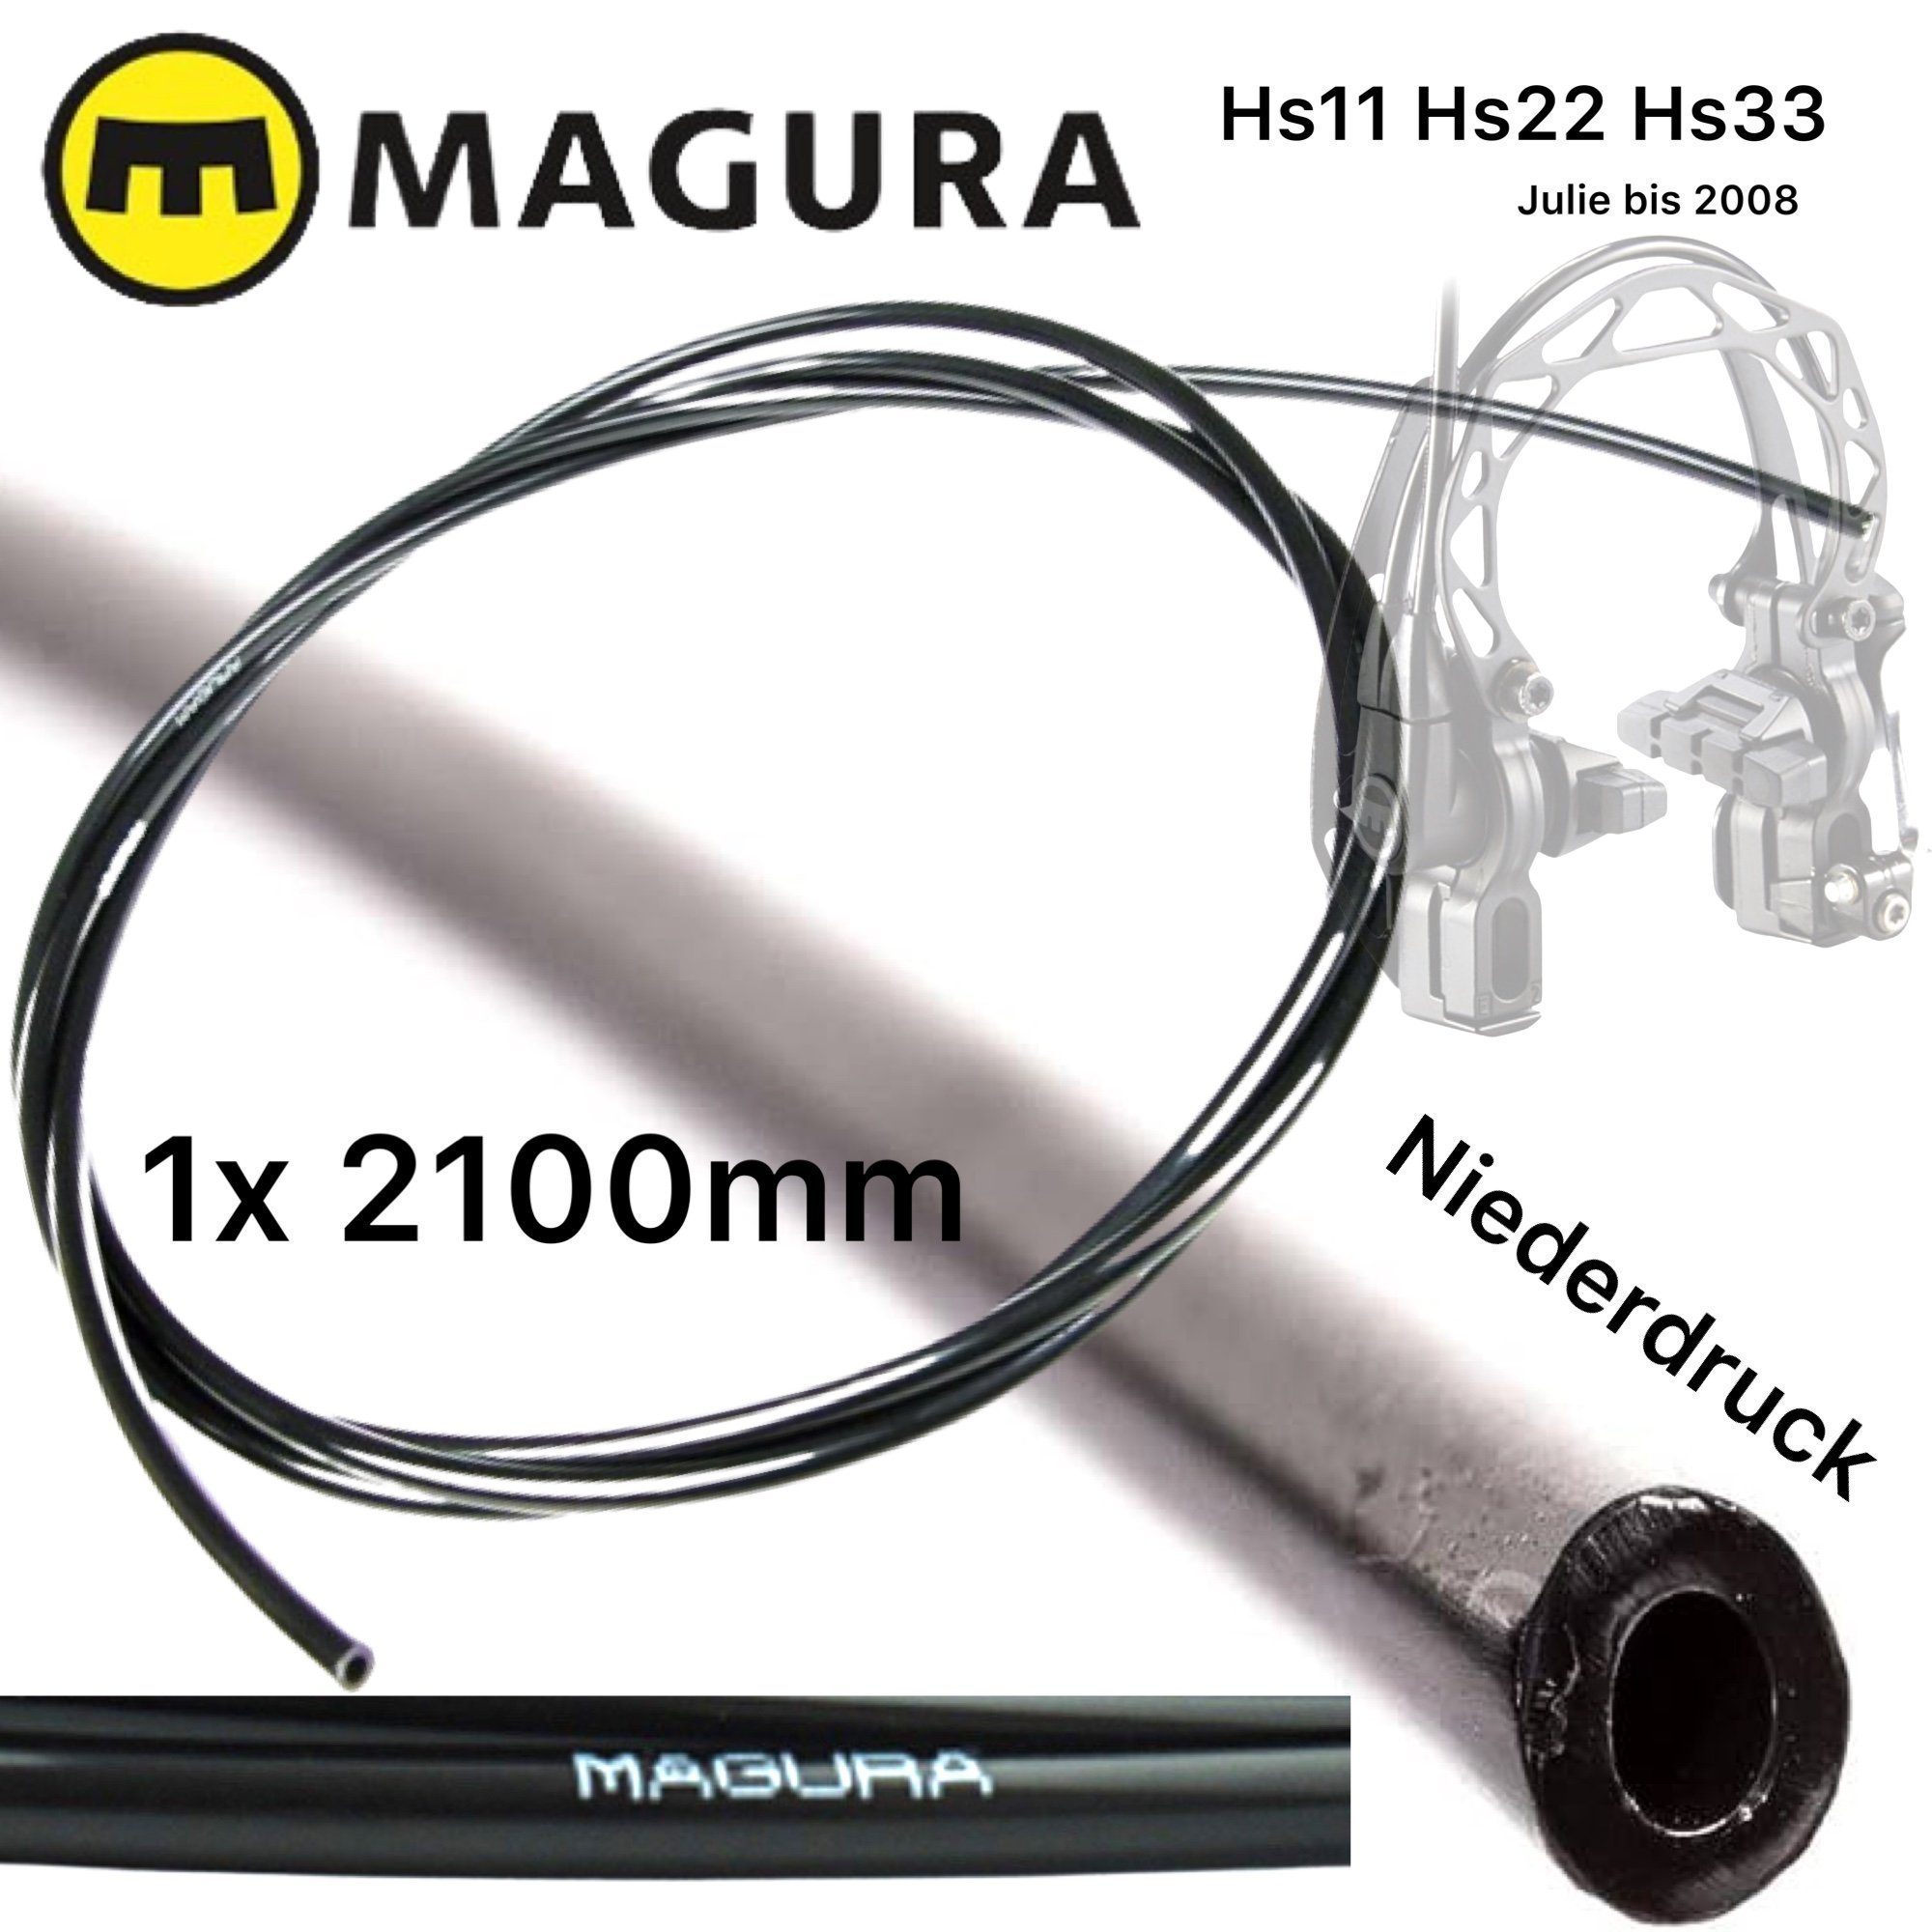 Magura Felgenbremse 1x Magura Bremsleitung 2.3m für Niederdruck